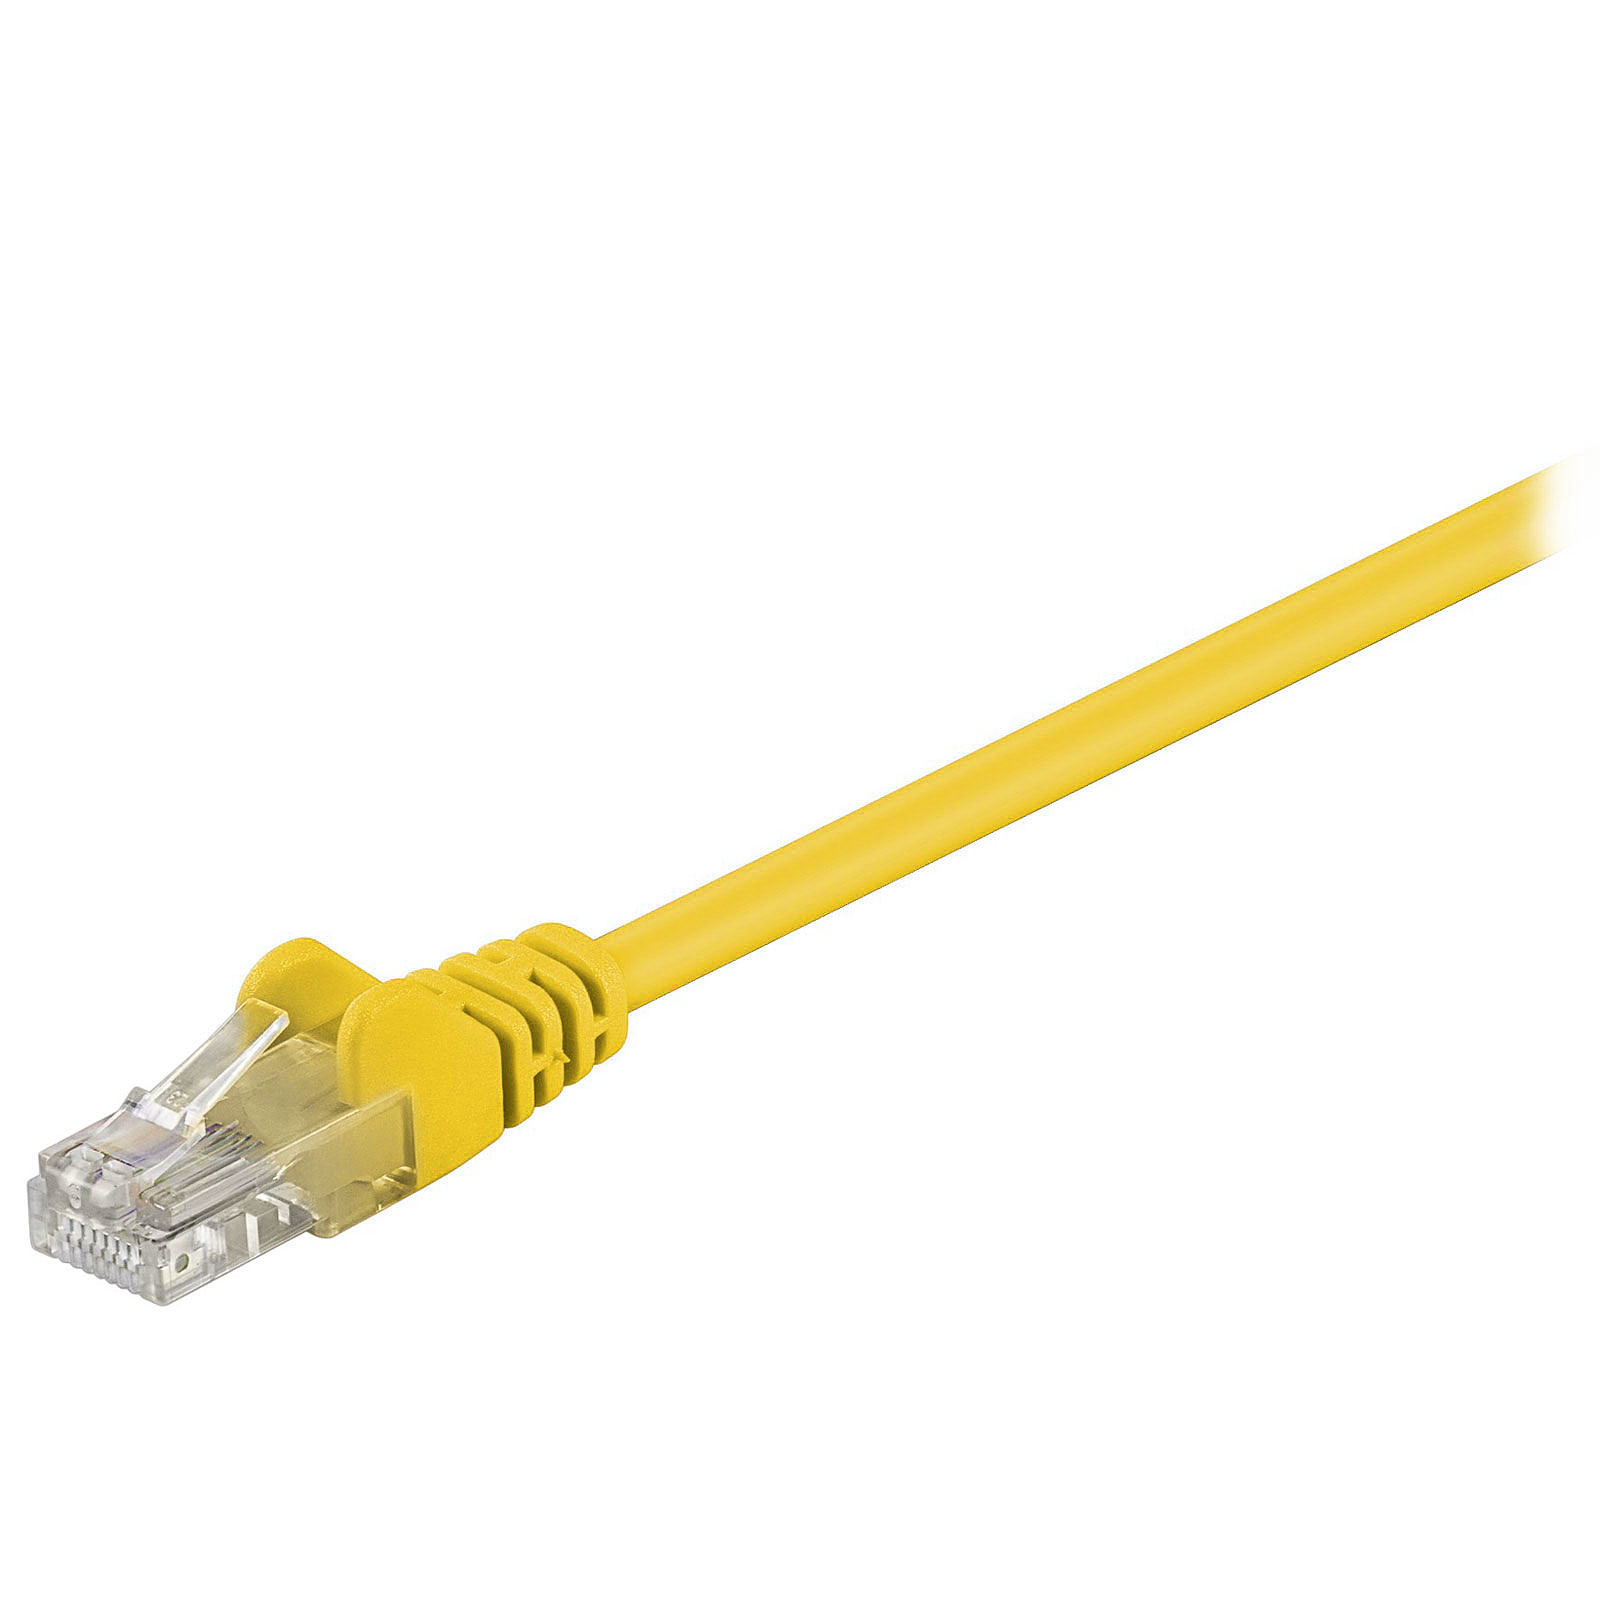 Cable RJ45 categorie 5e U/UTP 0.5 m (Jaune) - Cable RJ45 Generique